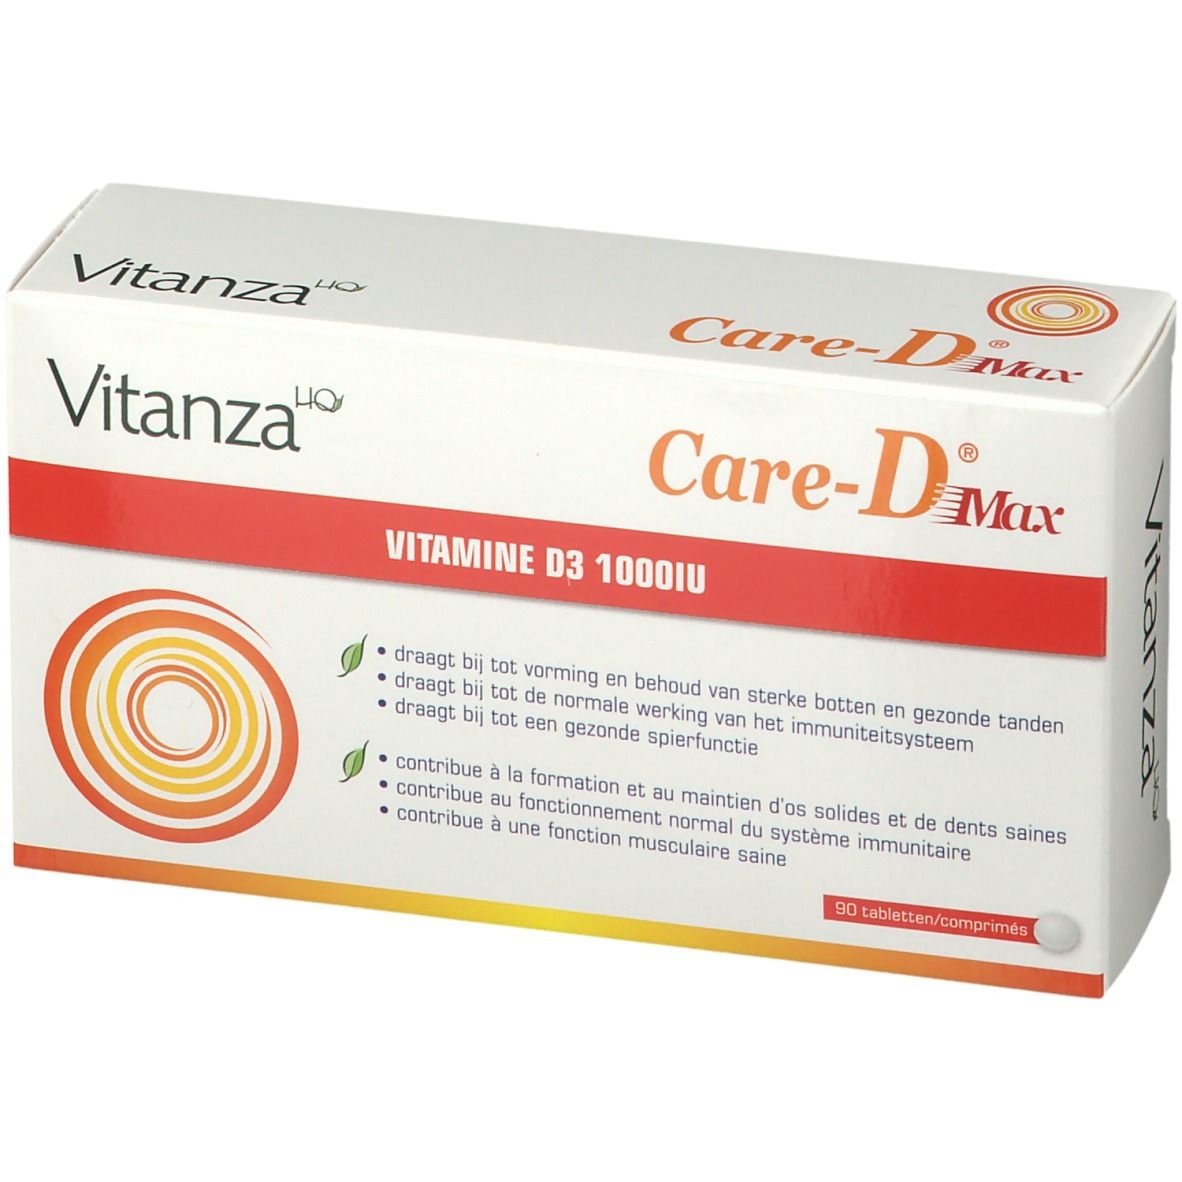 Vitanza HQ Care D Max